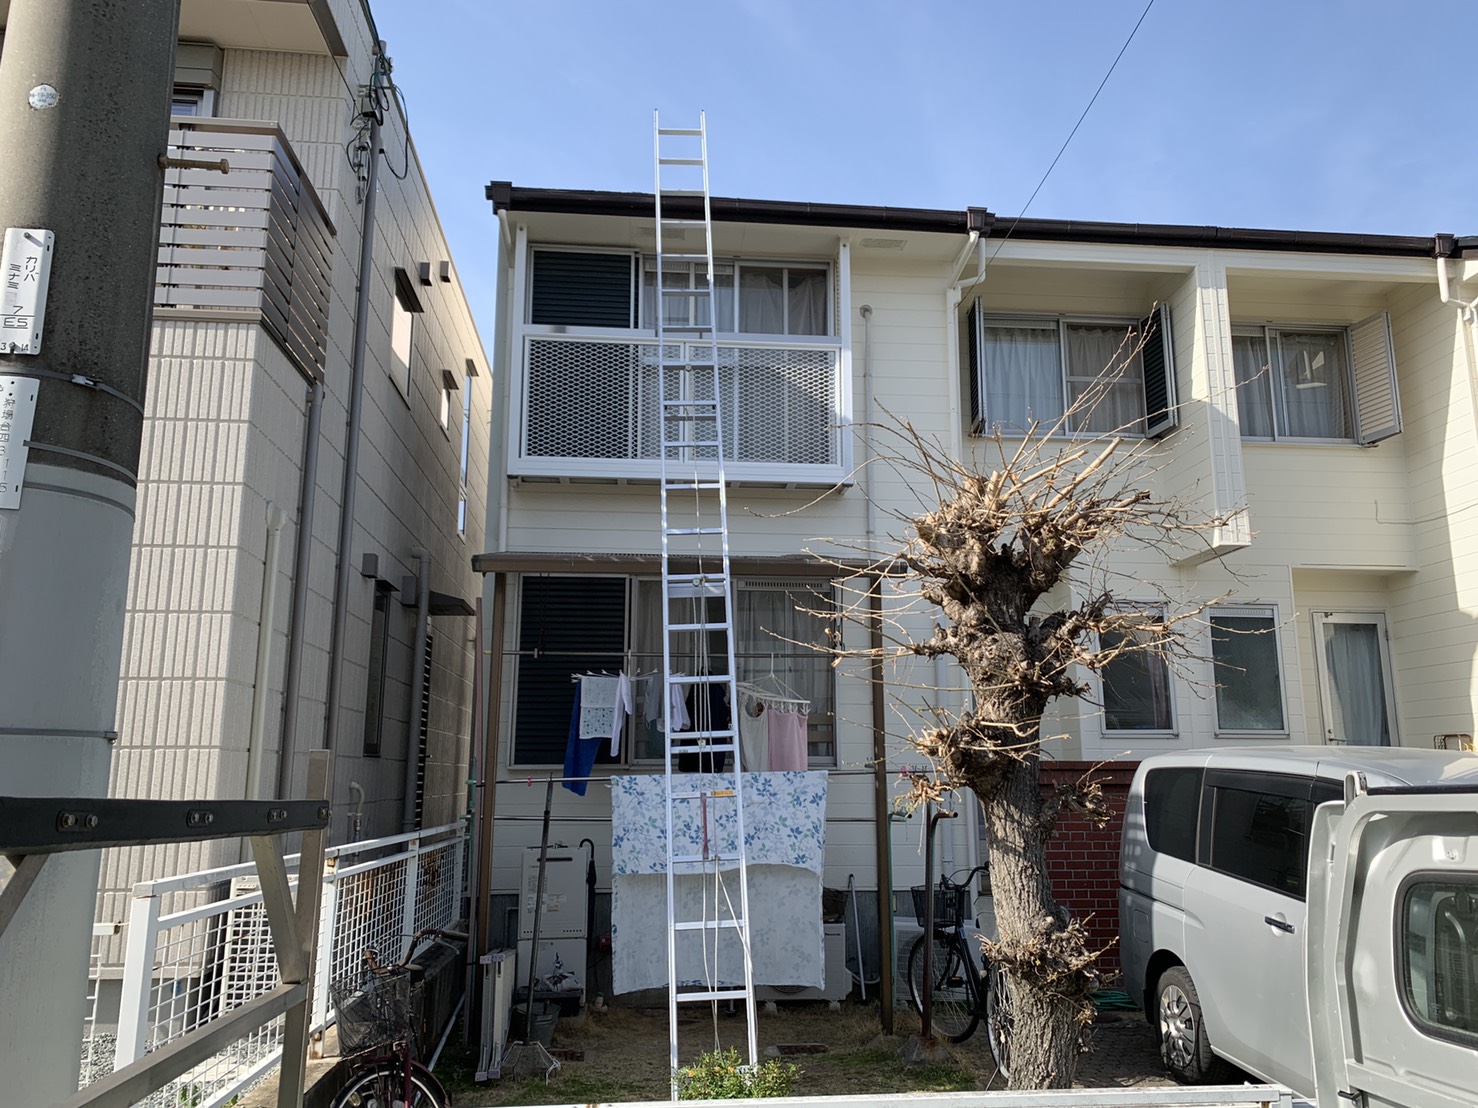 神戸市西区での連棟屋根の増築部分から雨漏りしたお家の様子